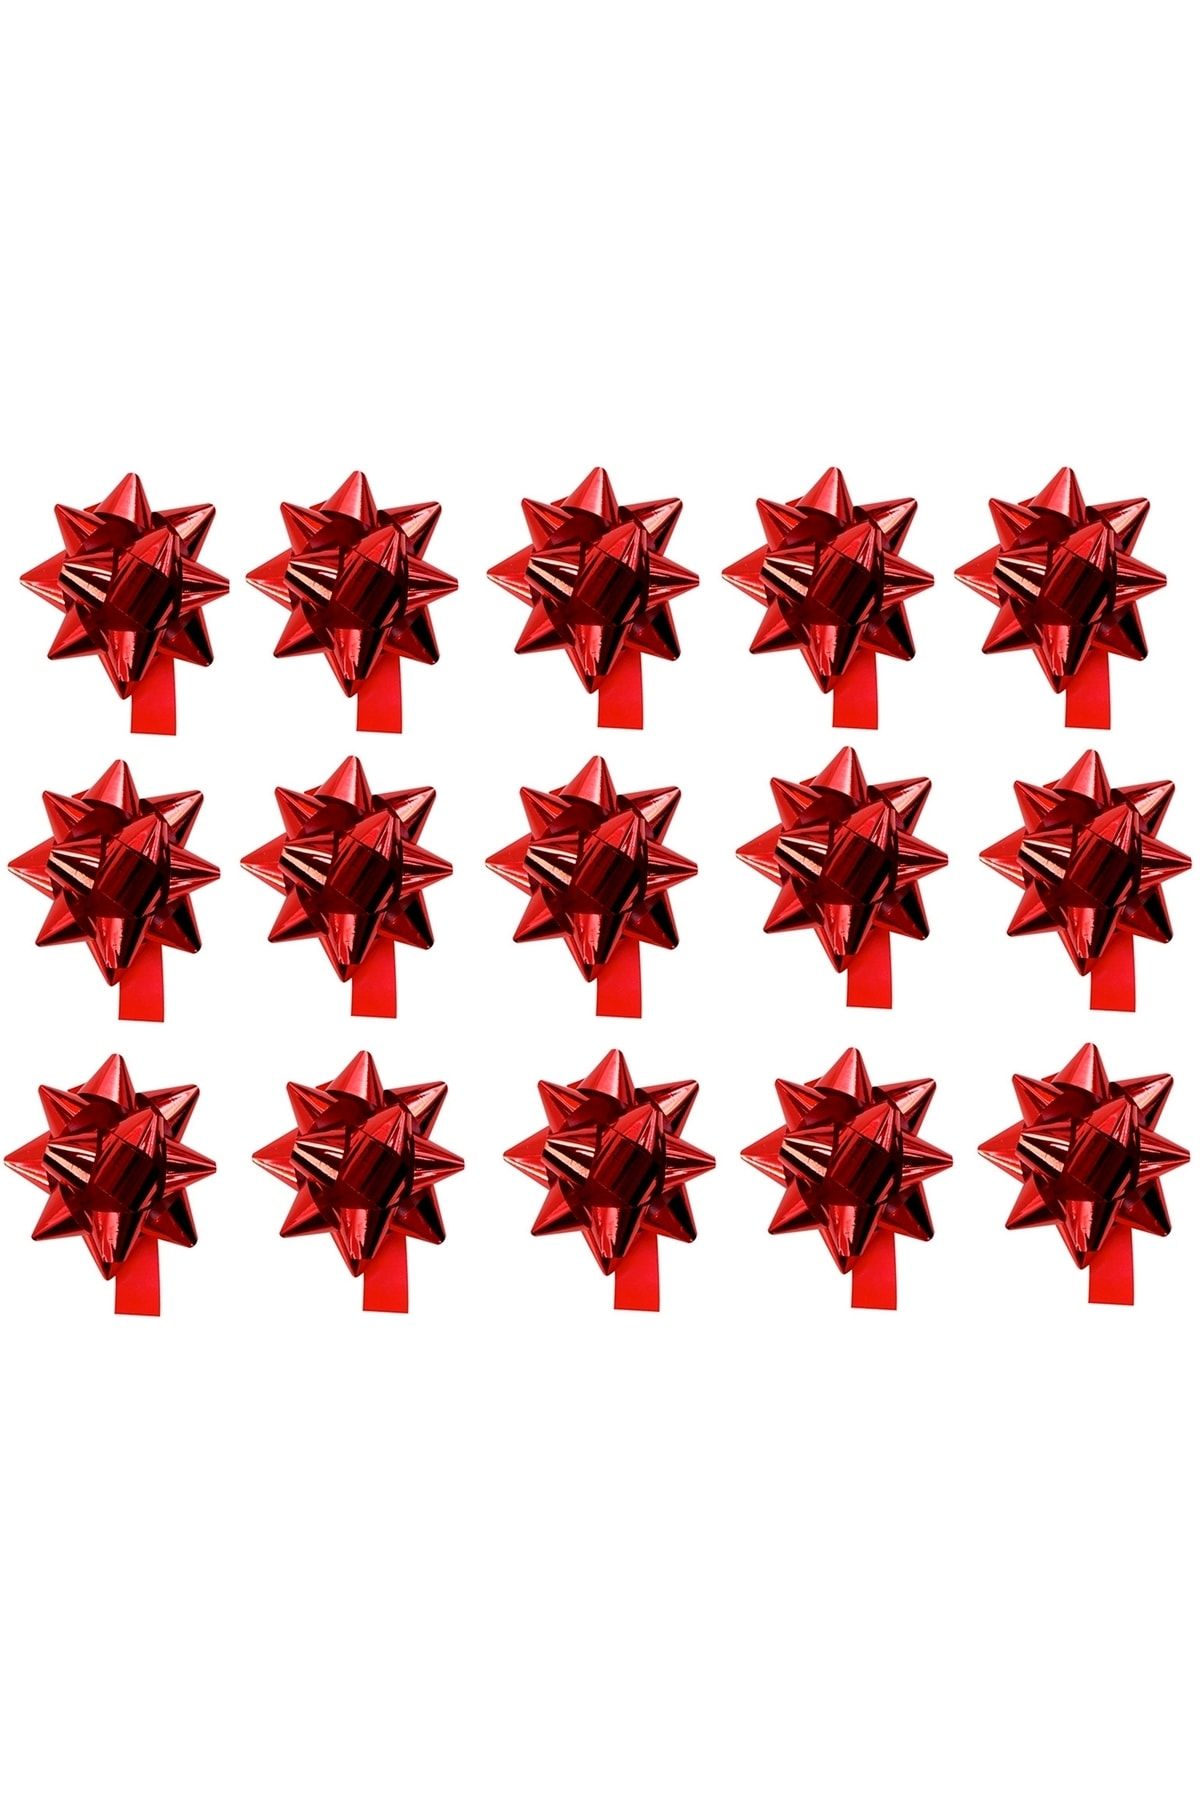 Happyland Sevgililer Günü Hediye Paketi - Hediye Kutusu Süsleme Kırmızı Metalik Fiyonk Süs Çekçek 15 Adet